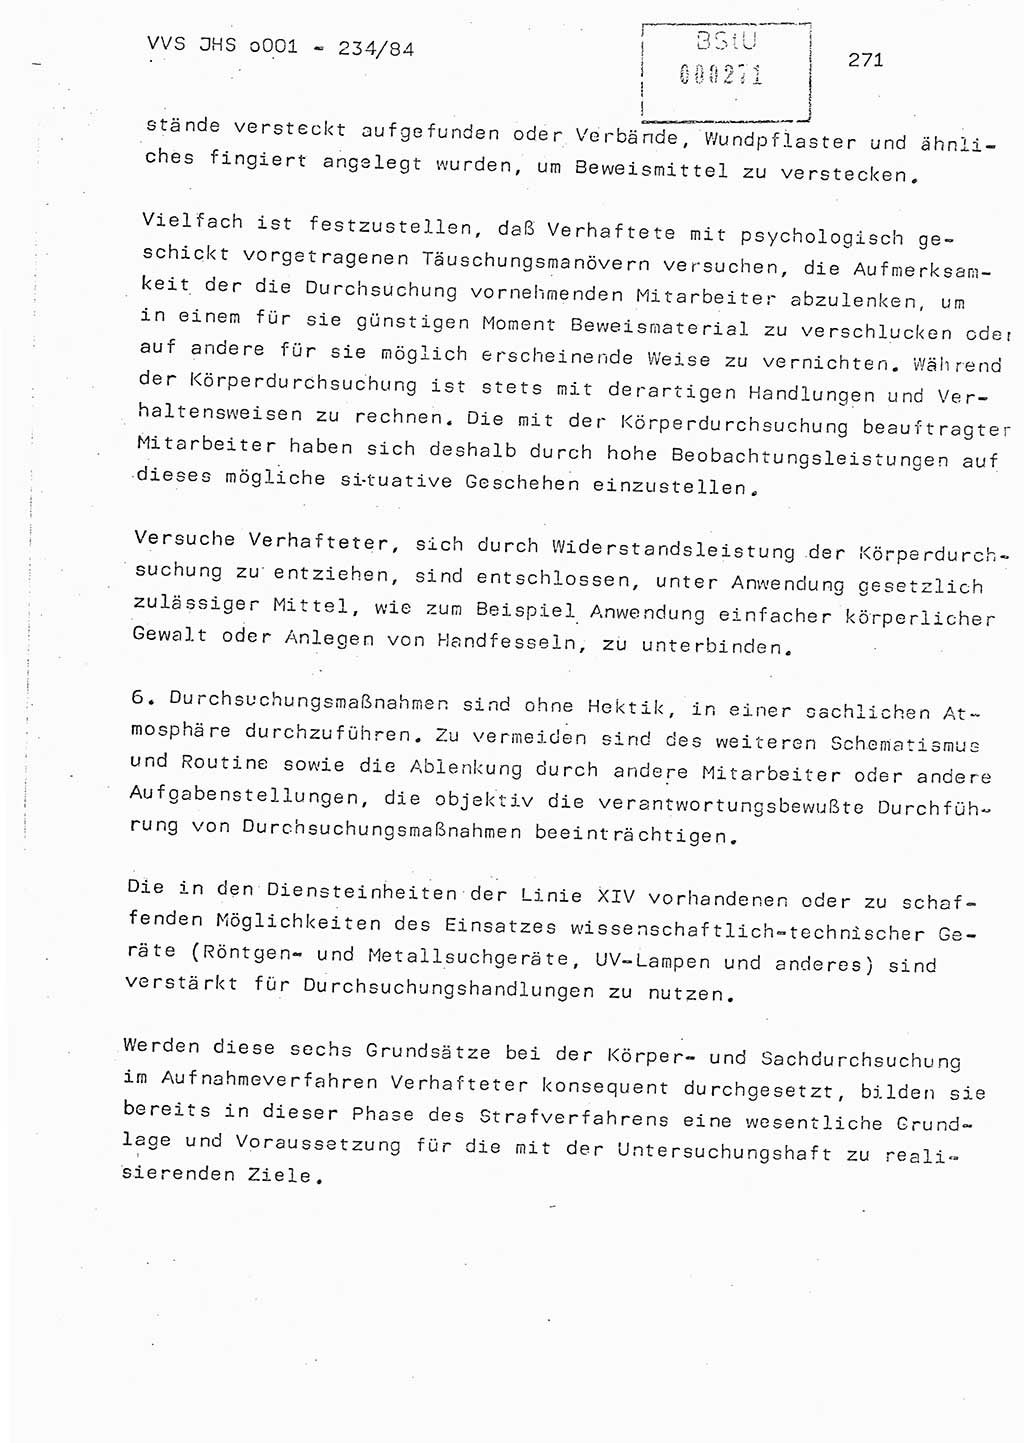 Dissertation Oberst Siegfried Rataizick (Abt. ⅩⅣ), Oberstleutnant Volkmar Heinz (Abt. ⅩⅣ), Oberstleutnant Werner Stein (HA Ⅸ), Hauptmann Heinz Conrad (JHS), Ministerium für Staatssicherheit (MfS) [Deutsche Demokratische Republik (DDR)], Juristische Hochschule (JHS), Vertrauliche Verschlußsache (VVS) o001-234/84, Potsdam 1984, Seite 271 (Diss. MfS DDR JHS VVS o001-234/84 1984, S. 271)